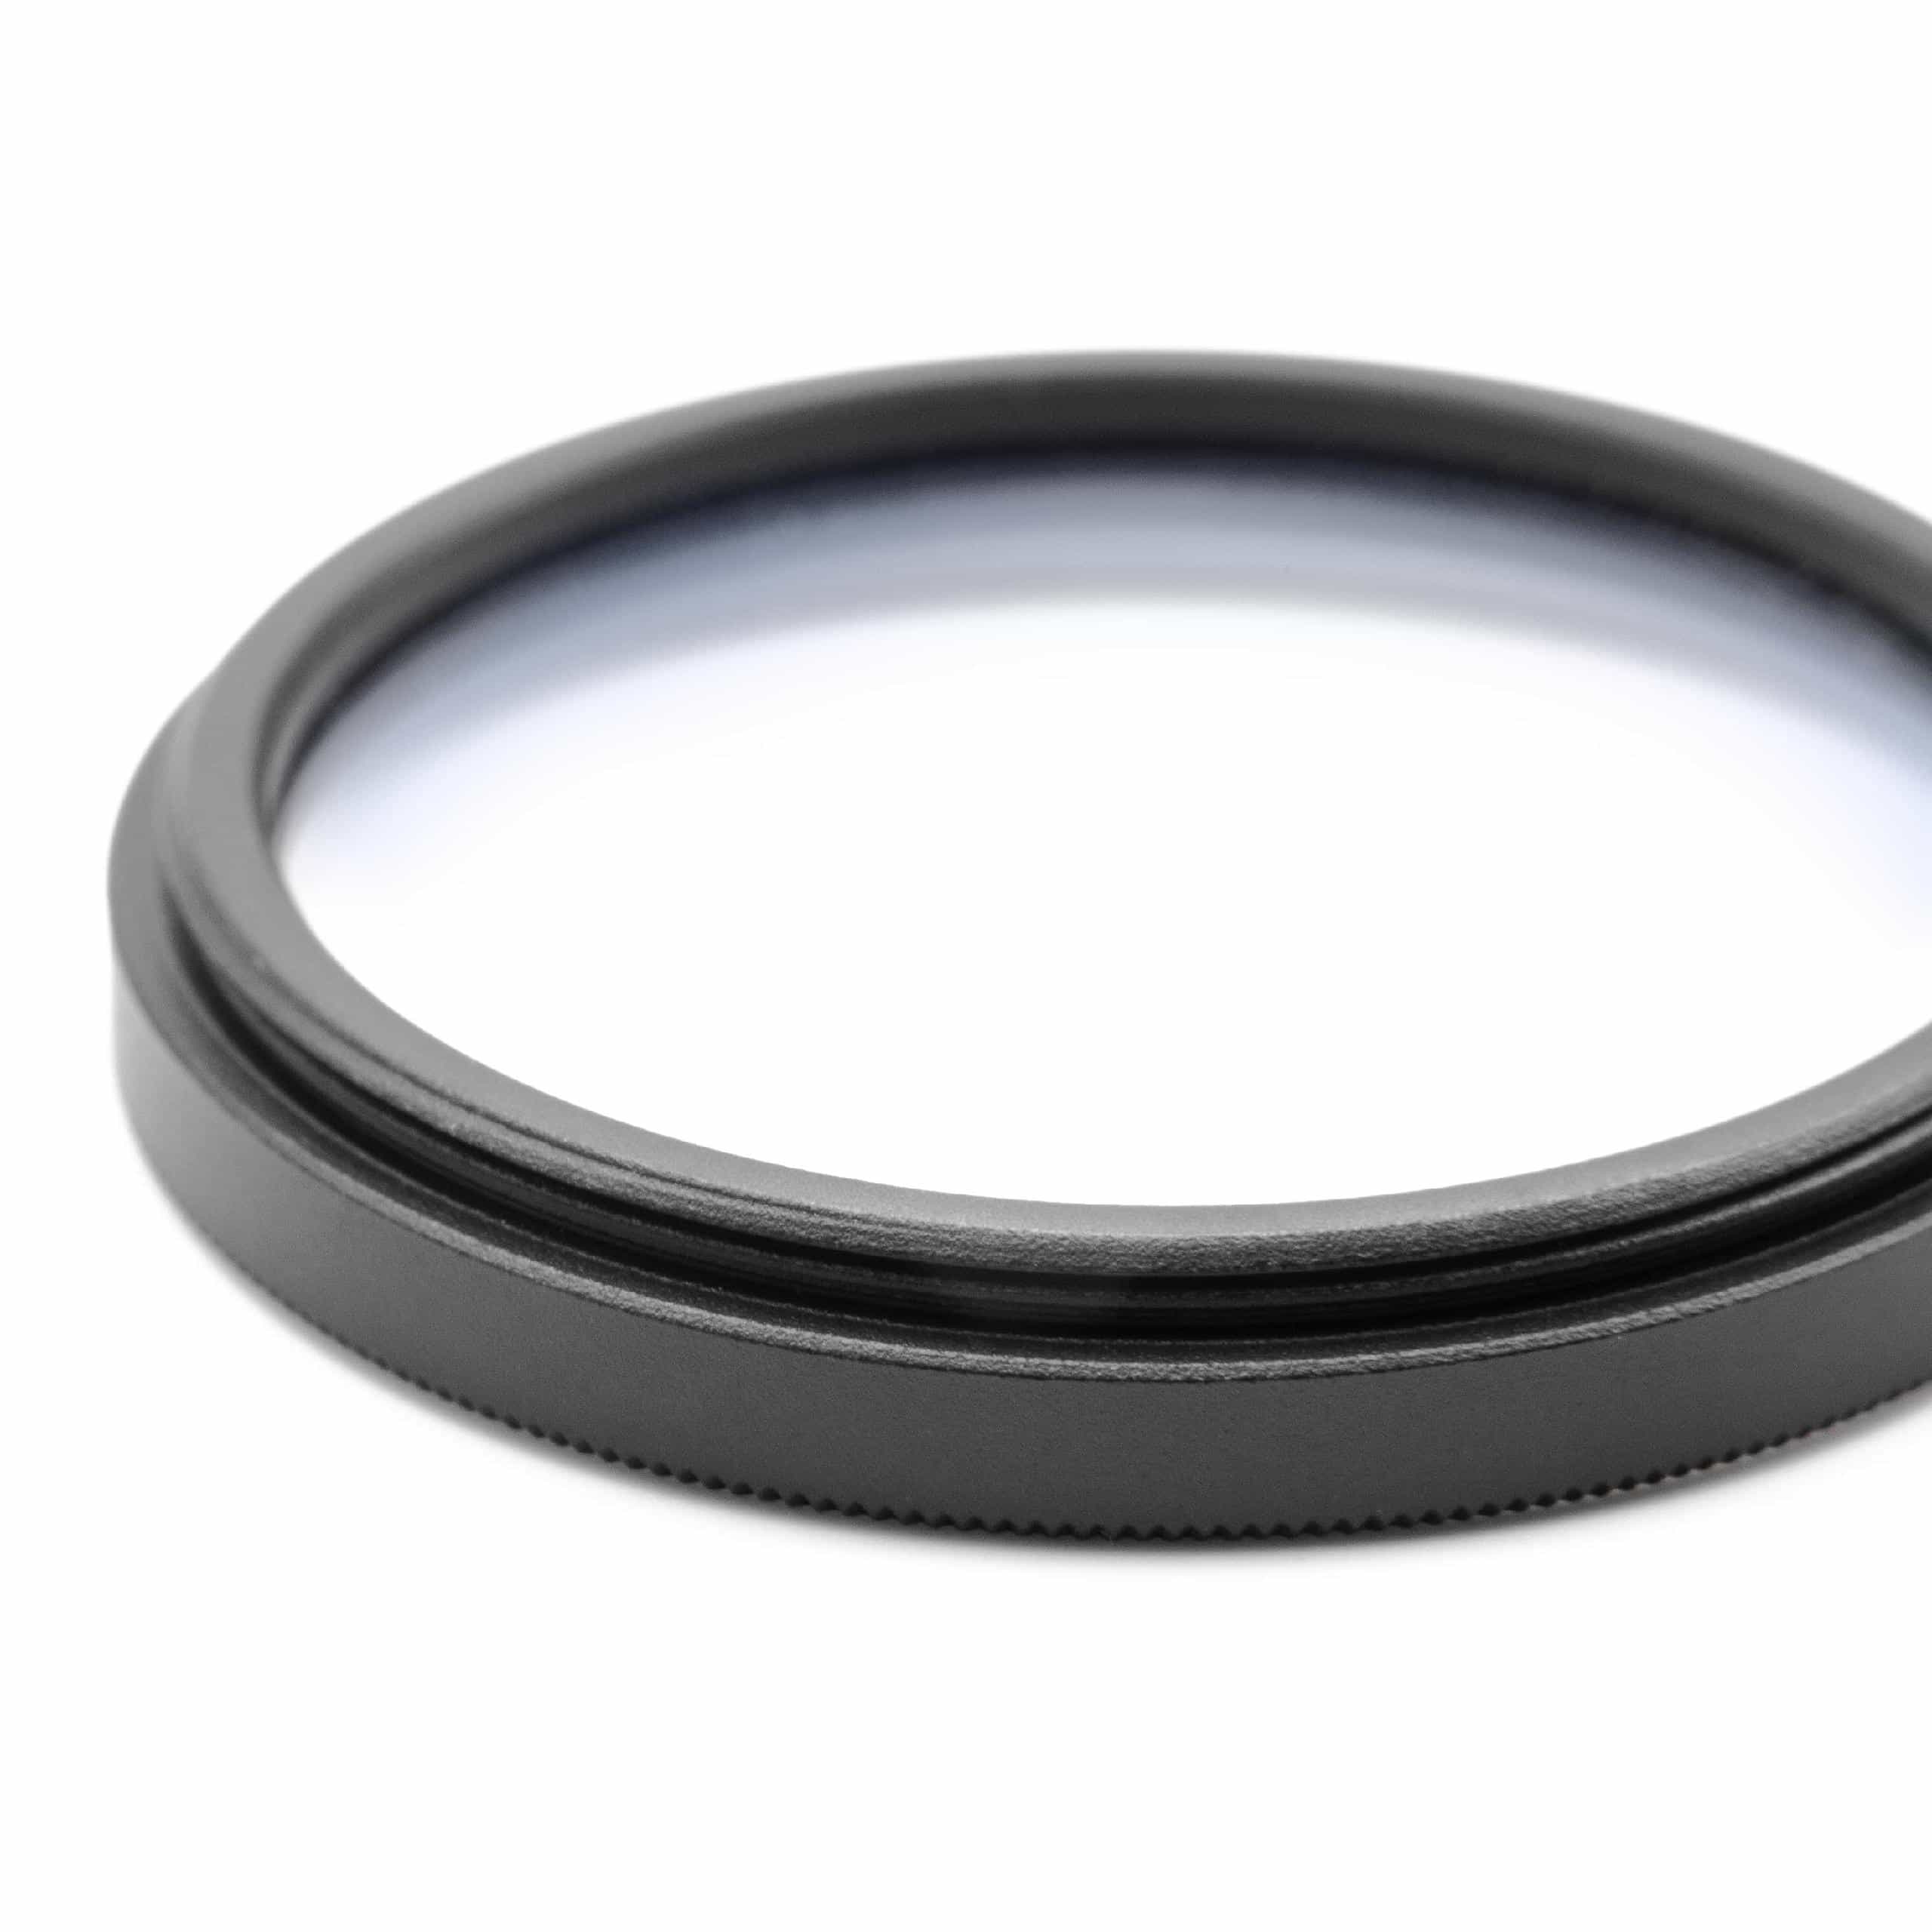 Filtro soft-focus per fotocamere e obiettivi con filettatura da 43 mm 